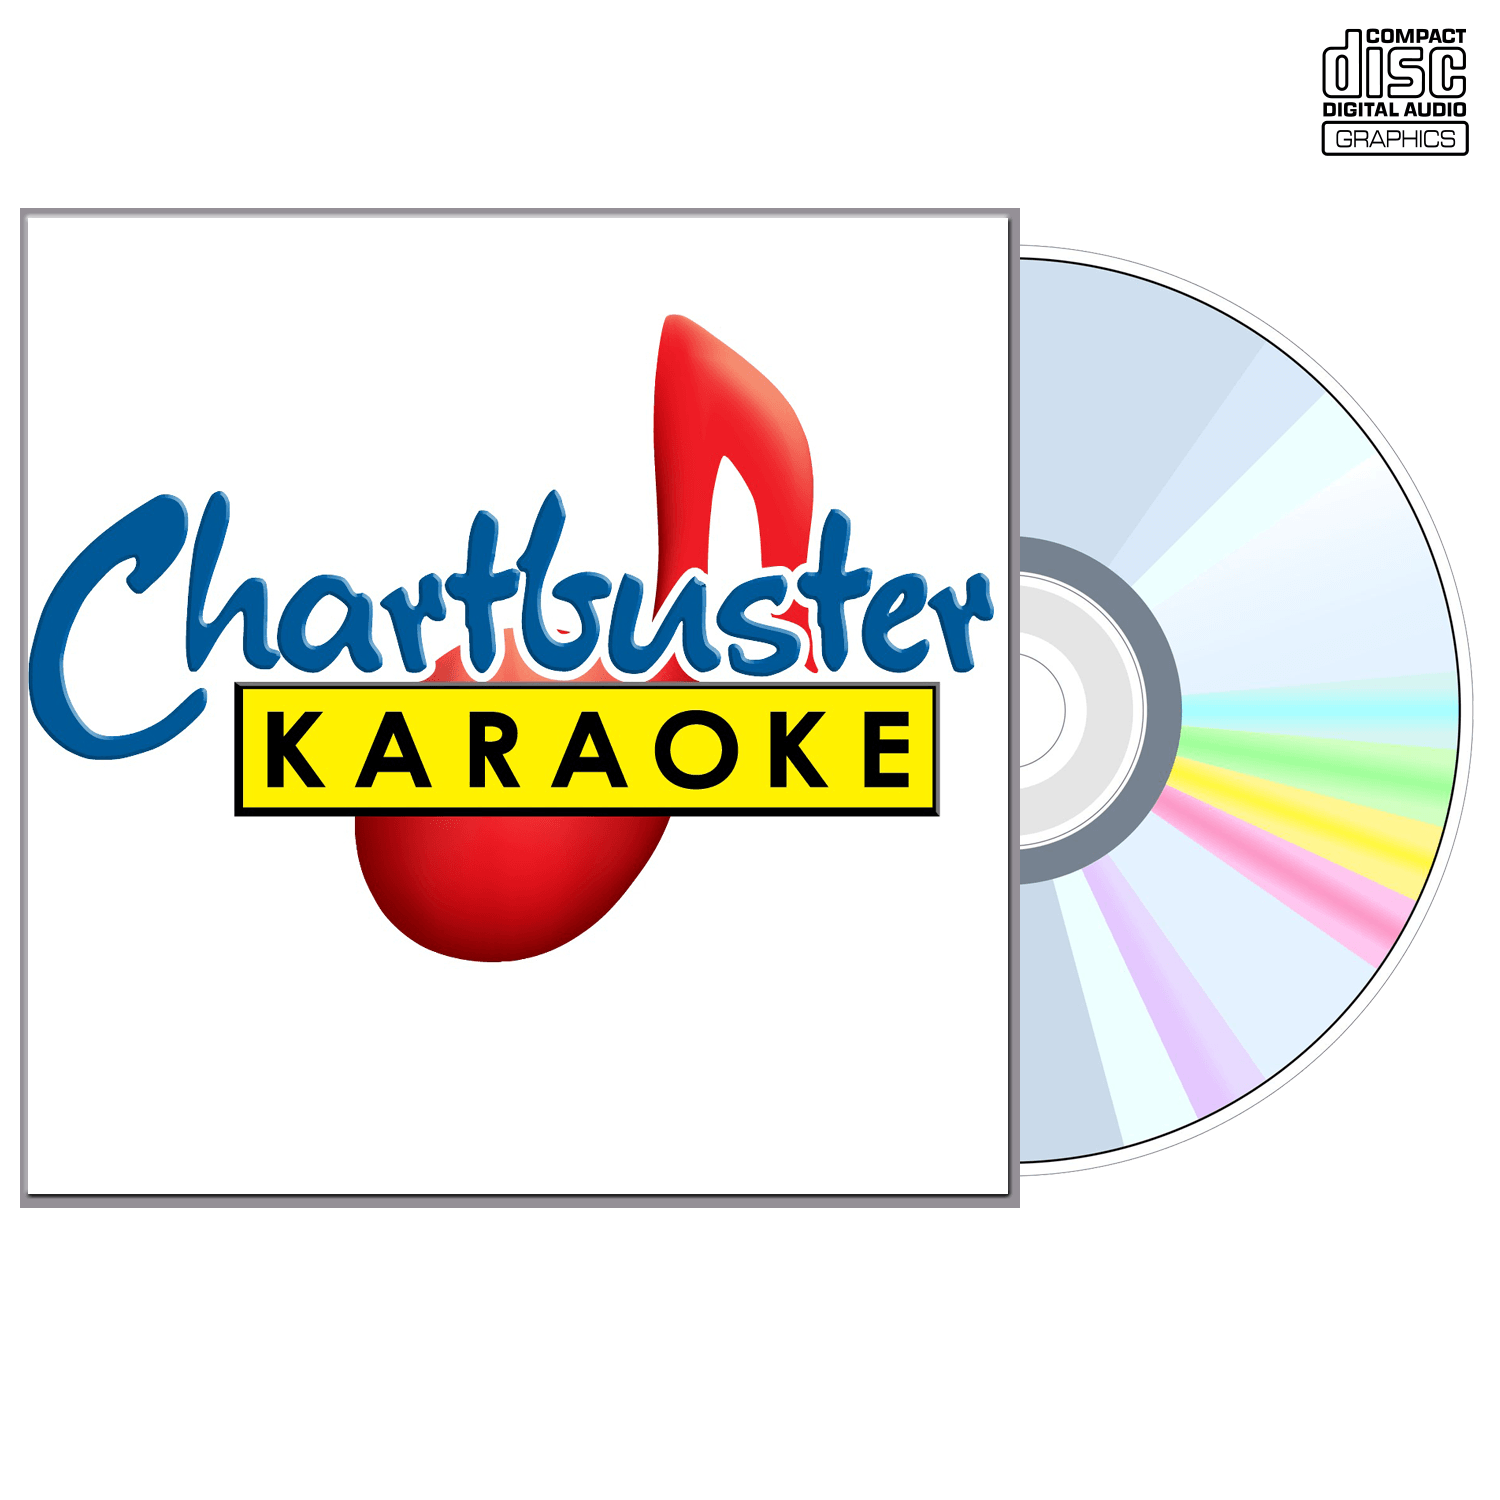 Steve Holy - CD+G - Chartbuster Karaoke - Karaoke Home Entertainment